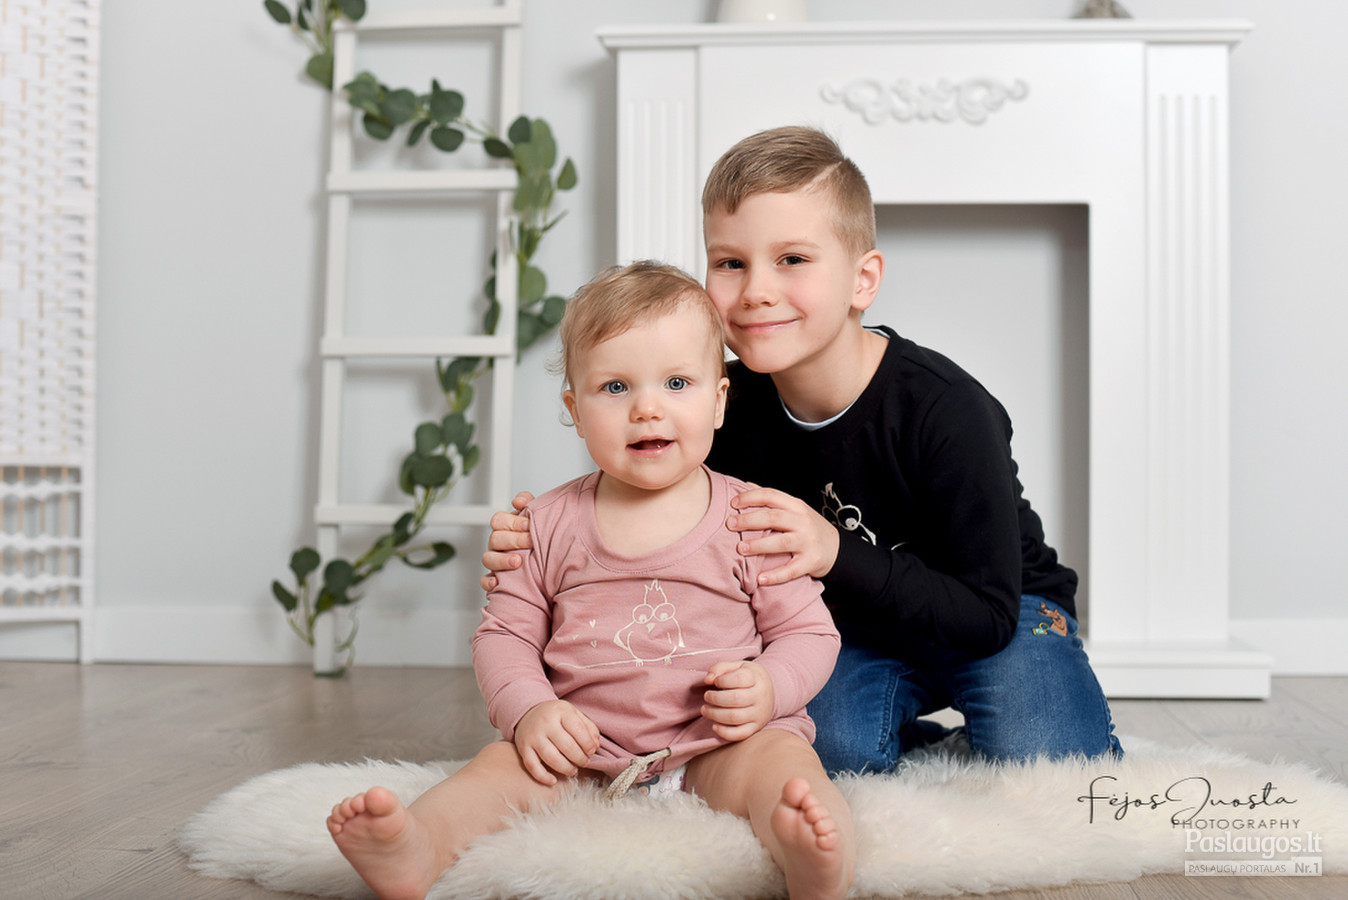 Kūdikių nuo 3 mėnesių fotografavimas mini studijoje arba jūsų namuose su fotografės dekoracijomis